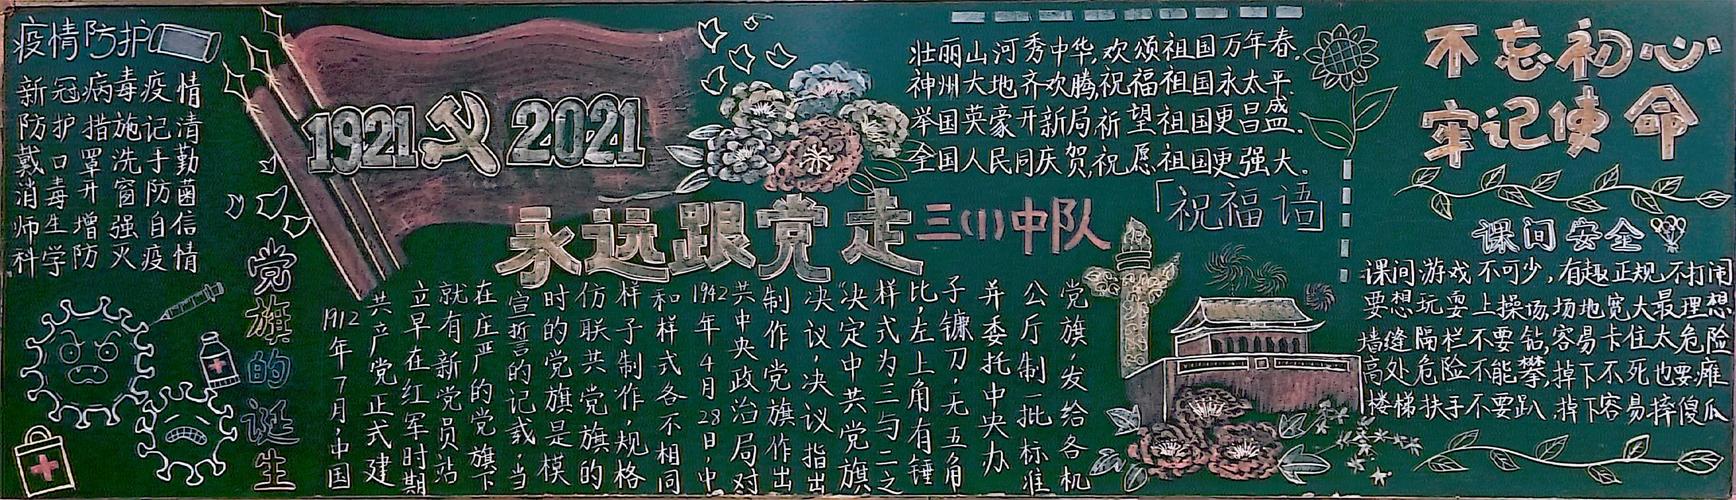 跟党走争做新时代接班人---徐州市西朱小学庆建党100周年黑板报评比